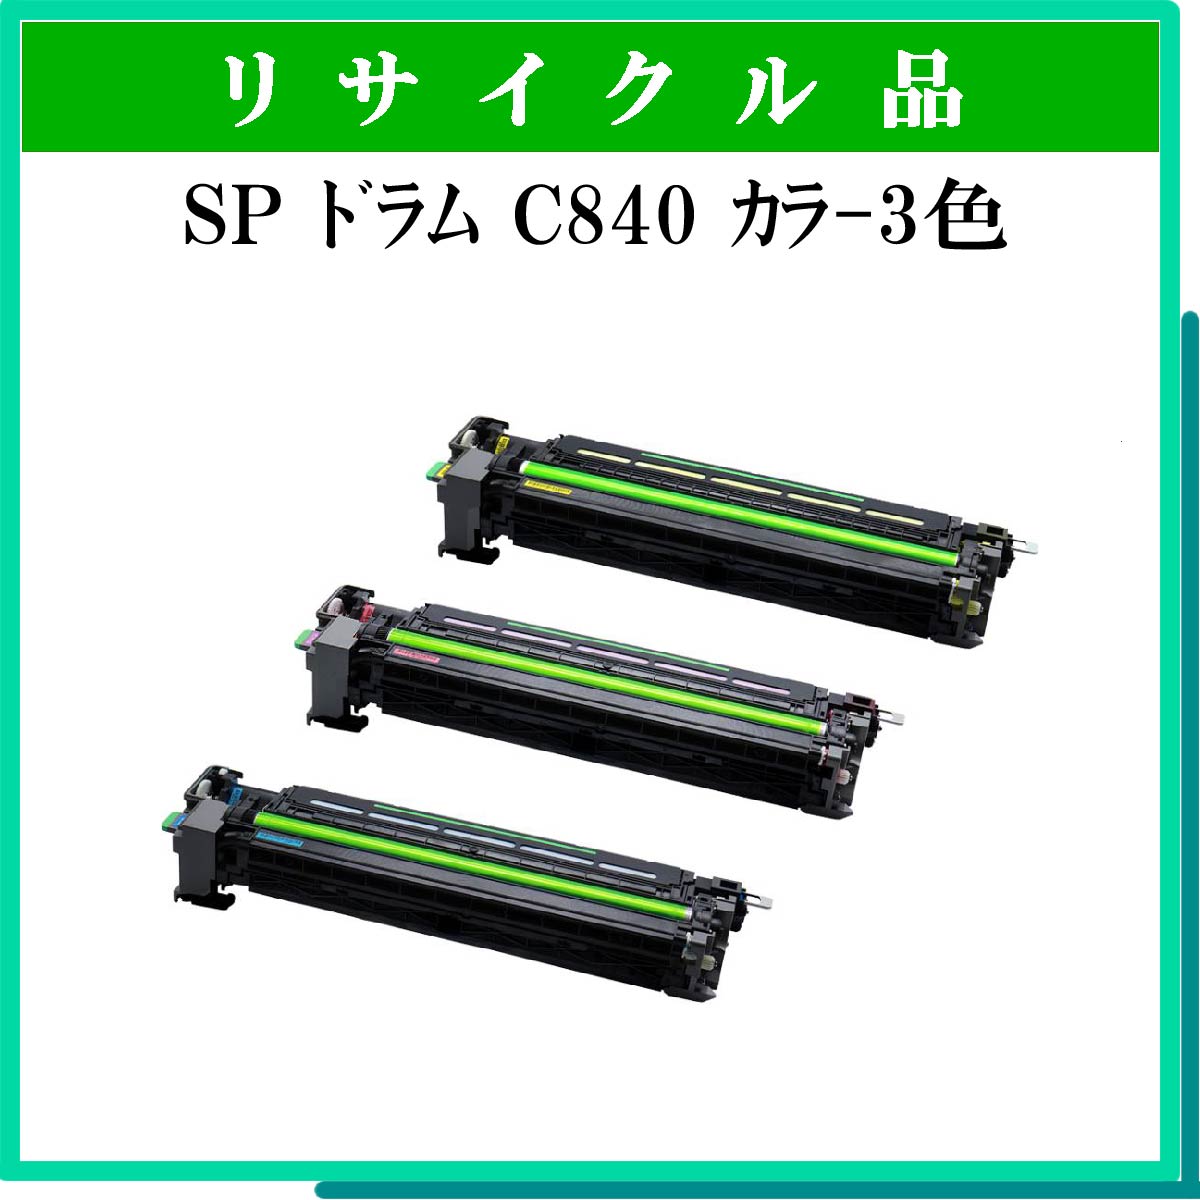 SP ﾄﾞﾗﾑﾕﾆｯﾄ C840 ｶﾗ-3色ﾊﾟｯｸ